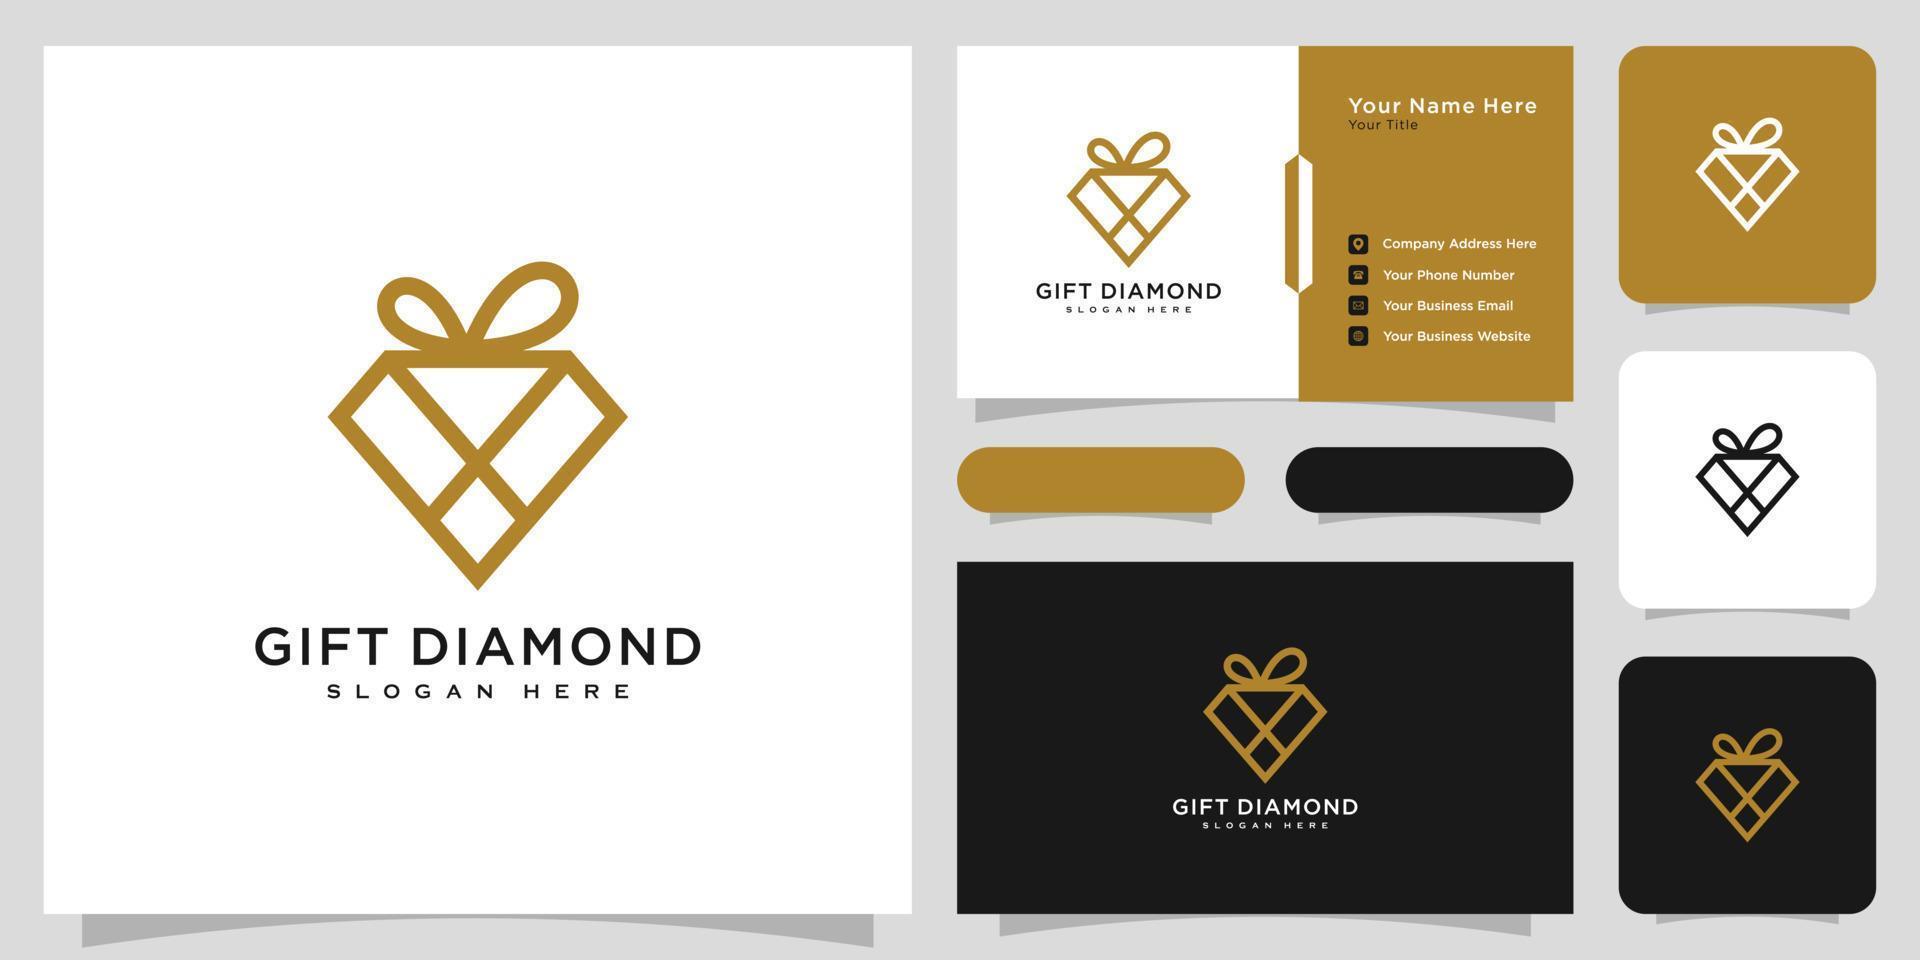 diseño de vector de logotipo de regalo de diamante y tarjeta de visita